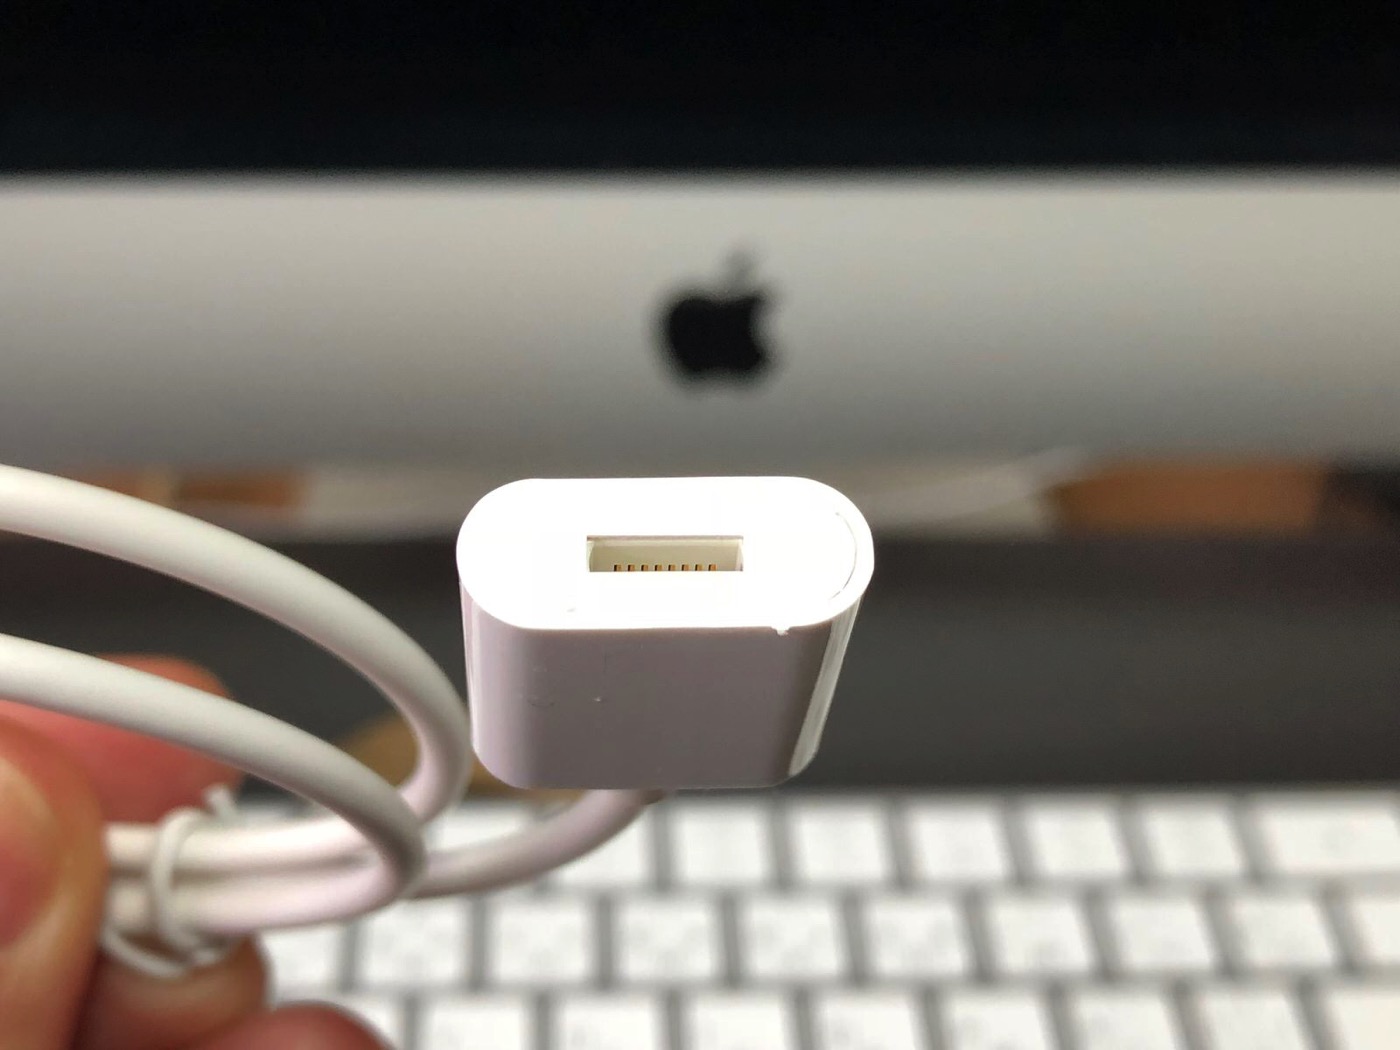 ［Amazon］注文していた「Apple Pencil 充電 ケーブル オス to メス 0.5m アップル ペンシル キャップ カバー」が届いたので早速開封してみたよ-4